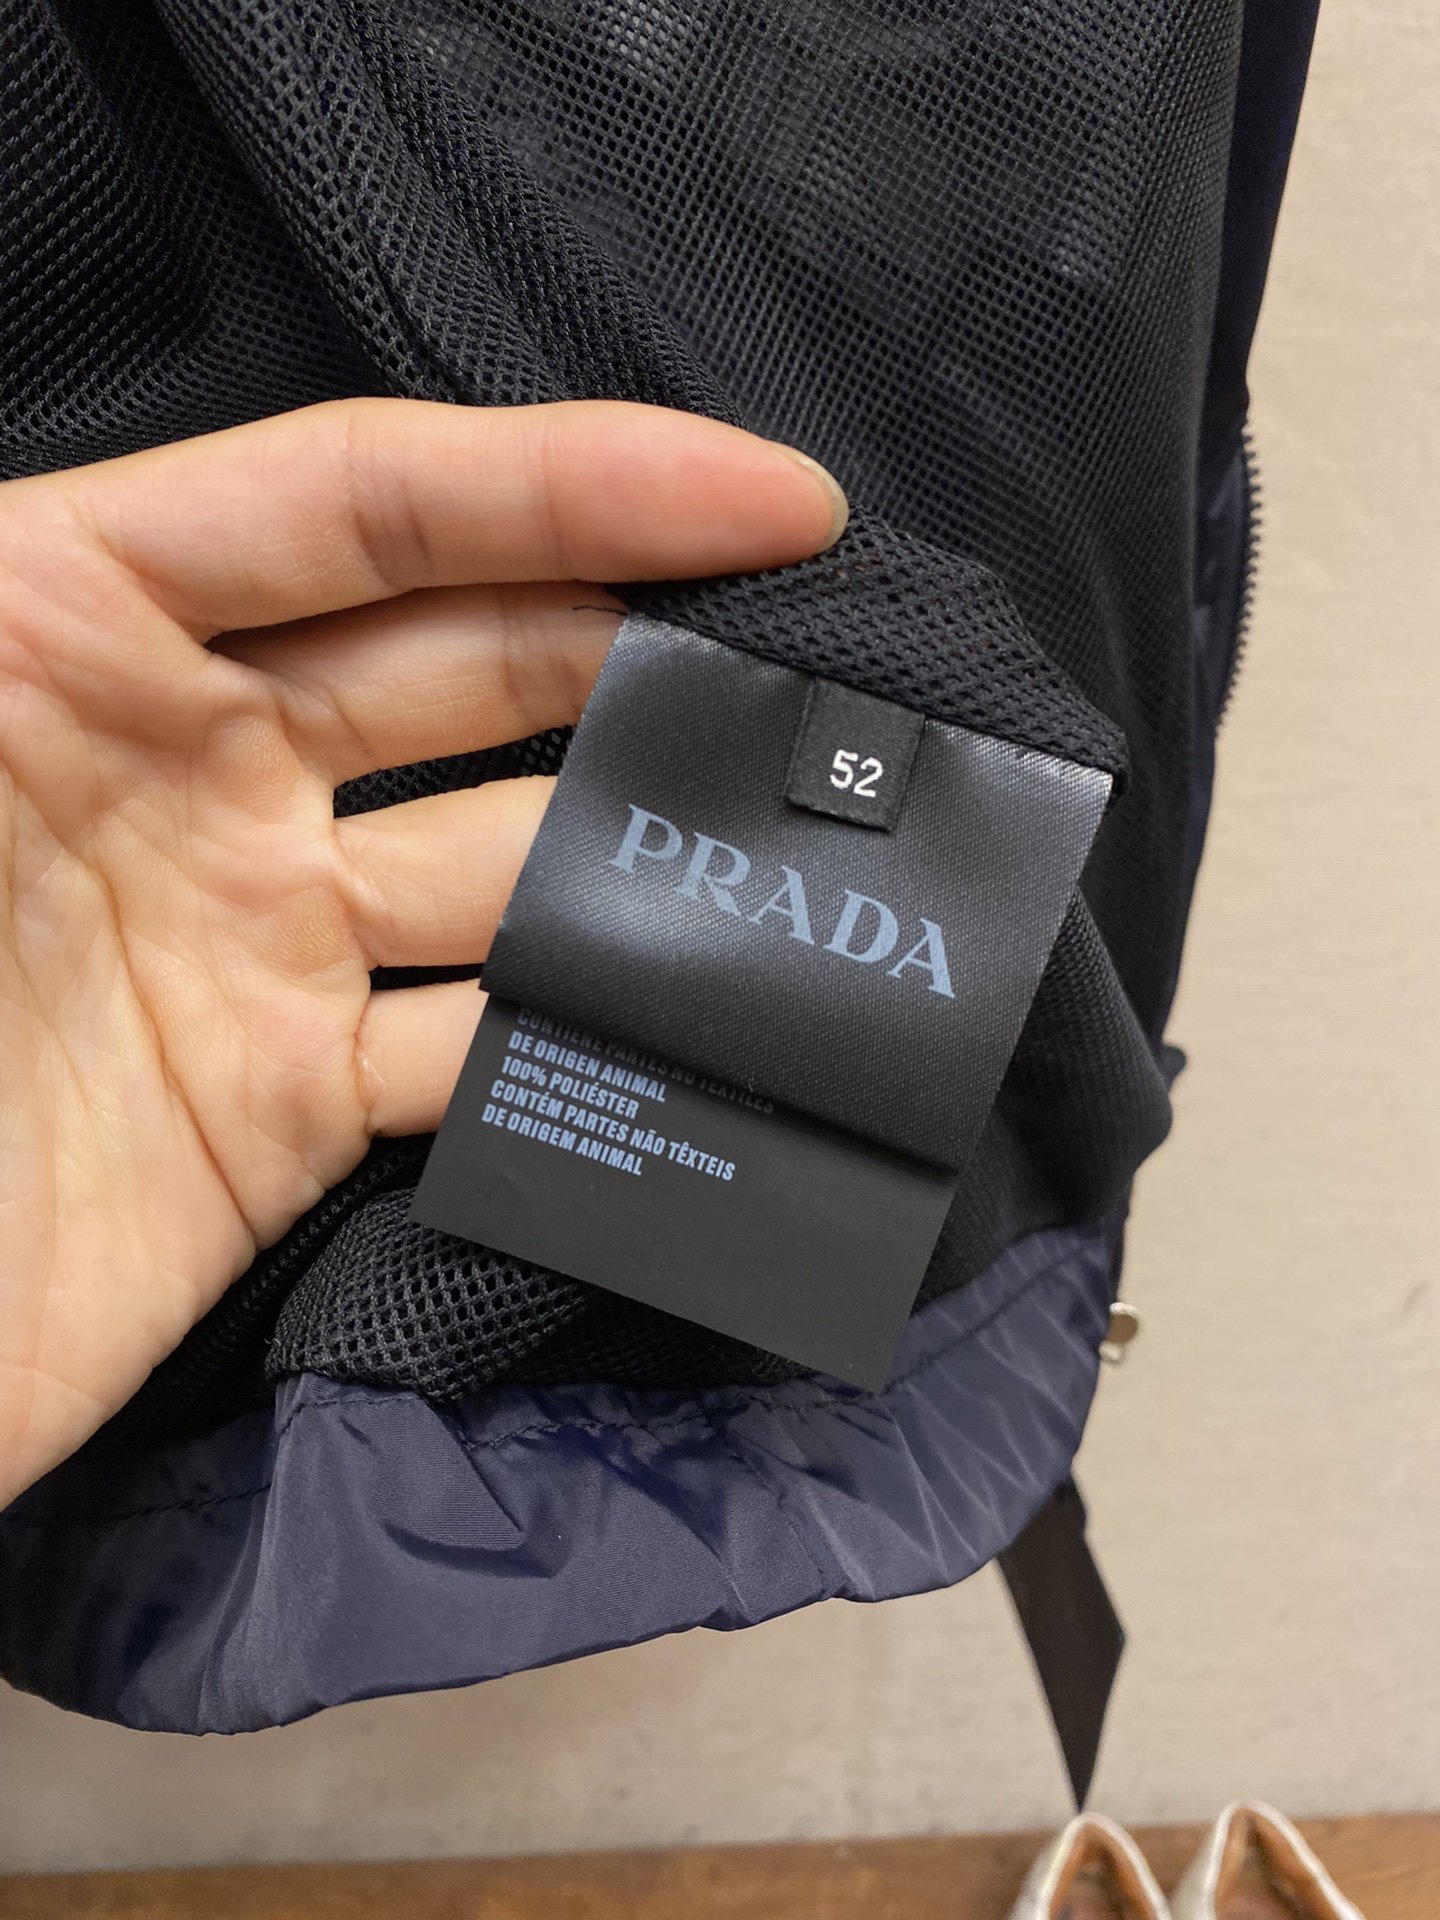 Prada春夏新款男士休闲定制夹克外套穿上简约干练的休闲外套瞬间重回时髦霸气又是活力满满的状态史前最流行